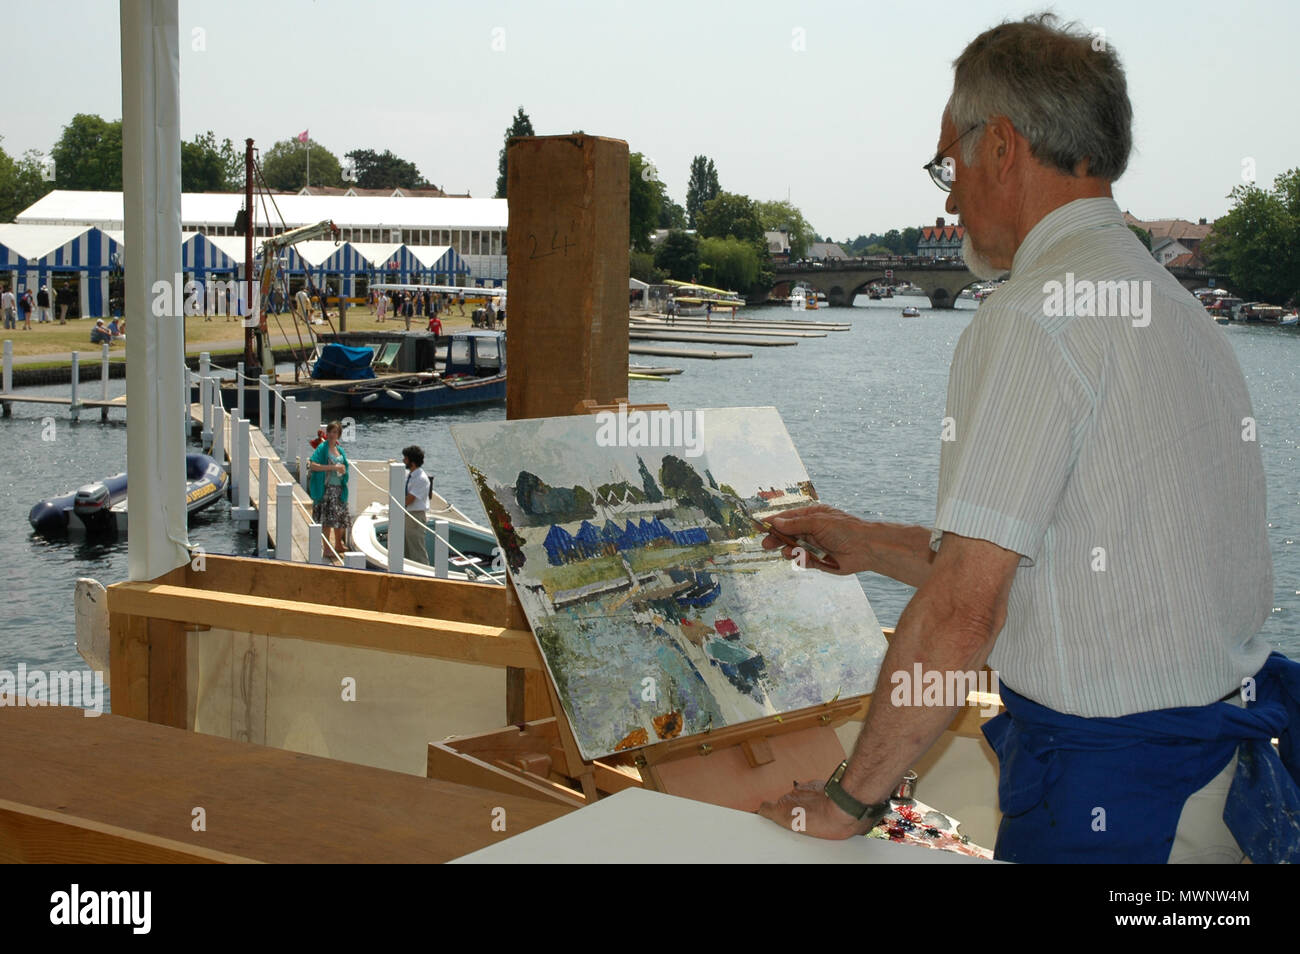 Artista en Residencia pinta una escena de regata, la regata Henley Royal, Oxfordshire, REINO UNIDO Foto de stock